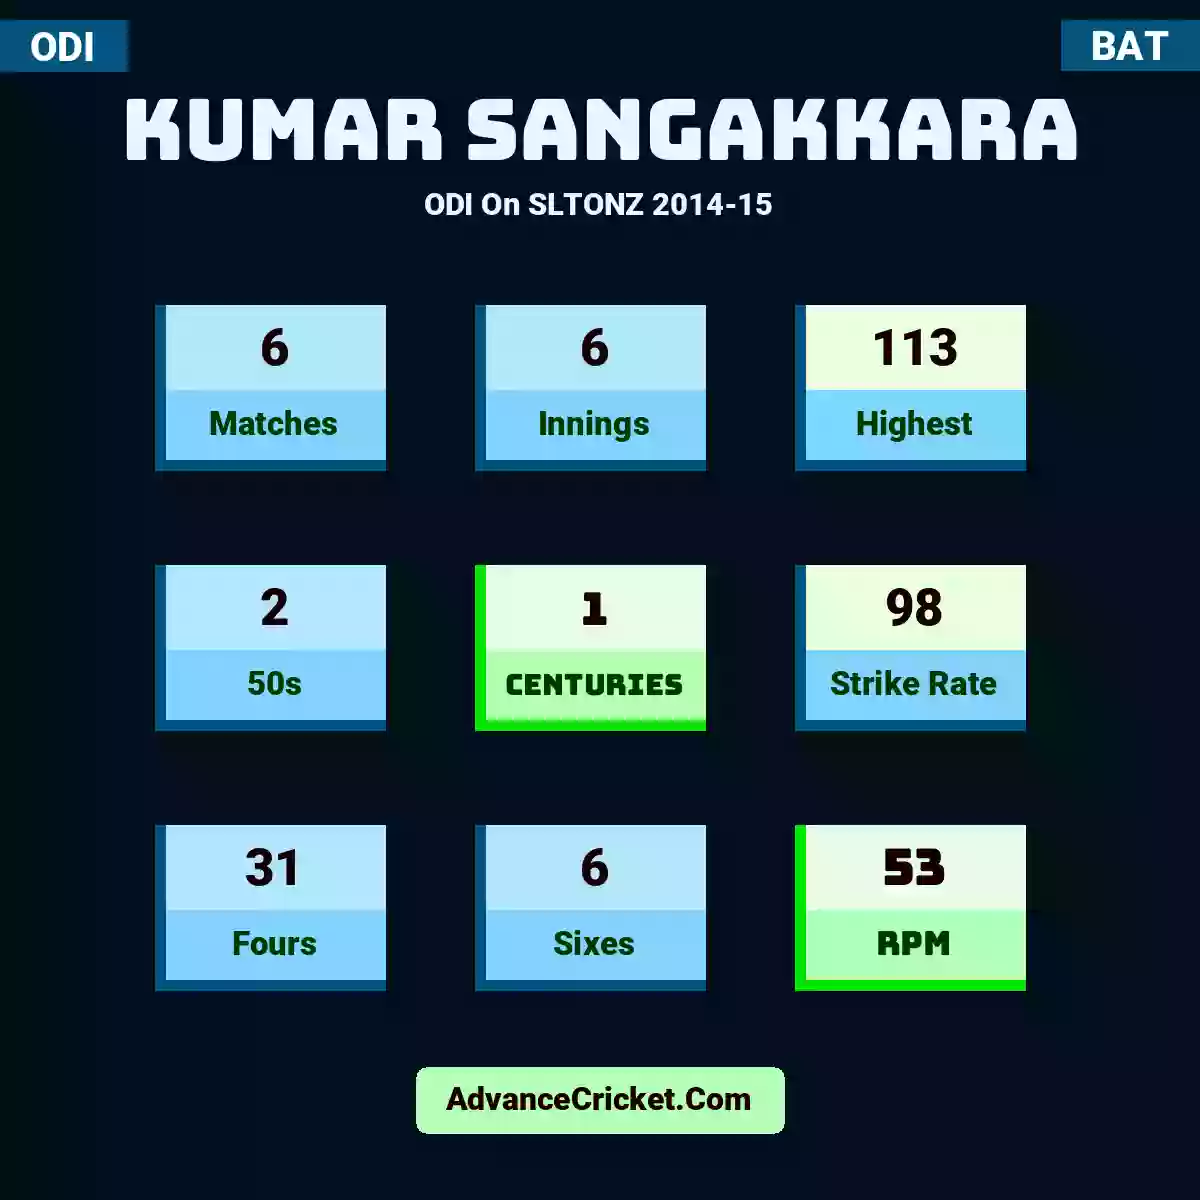 Kumar Sangakkara ODI  On SLTONZ 2014-15, Kumar Sangakkara played 6 matches, scored 113 runs as highest, 2 half-centuries, and 1 centuries, with a strike rate of 98. K.Sangakkara hit 31 fours and 6 sixes, with an RPM of 53.